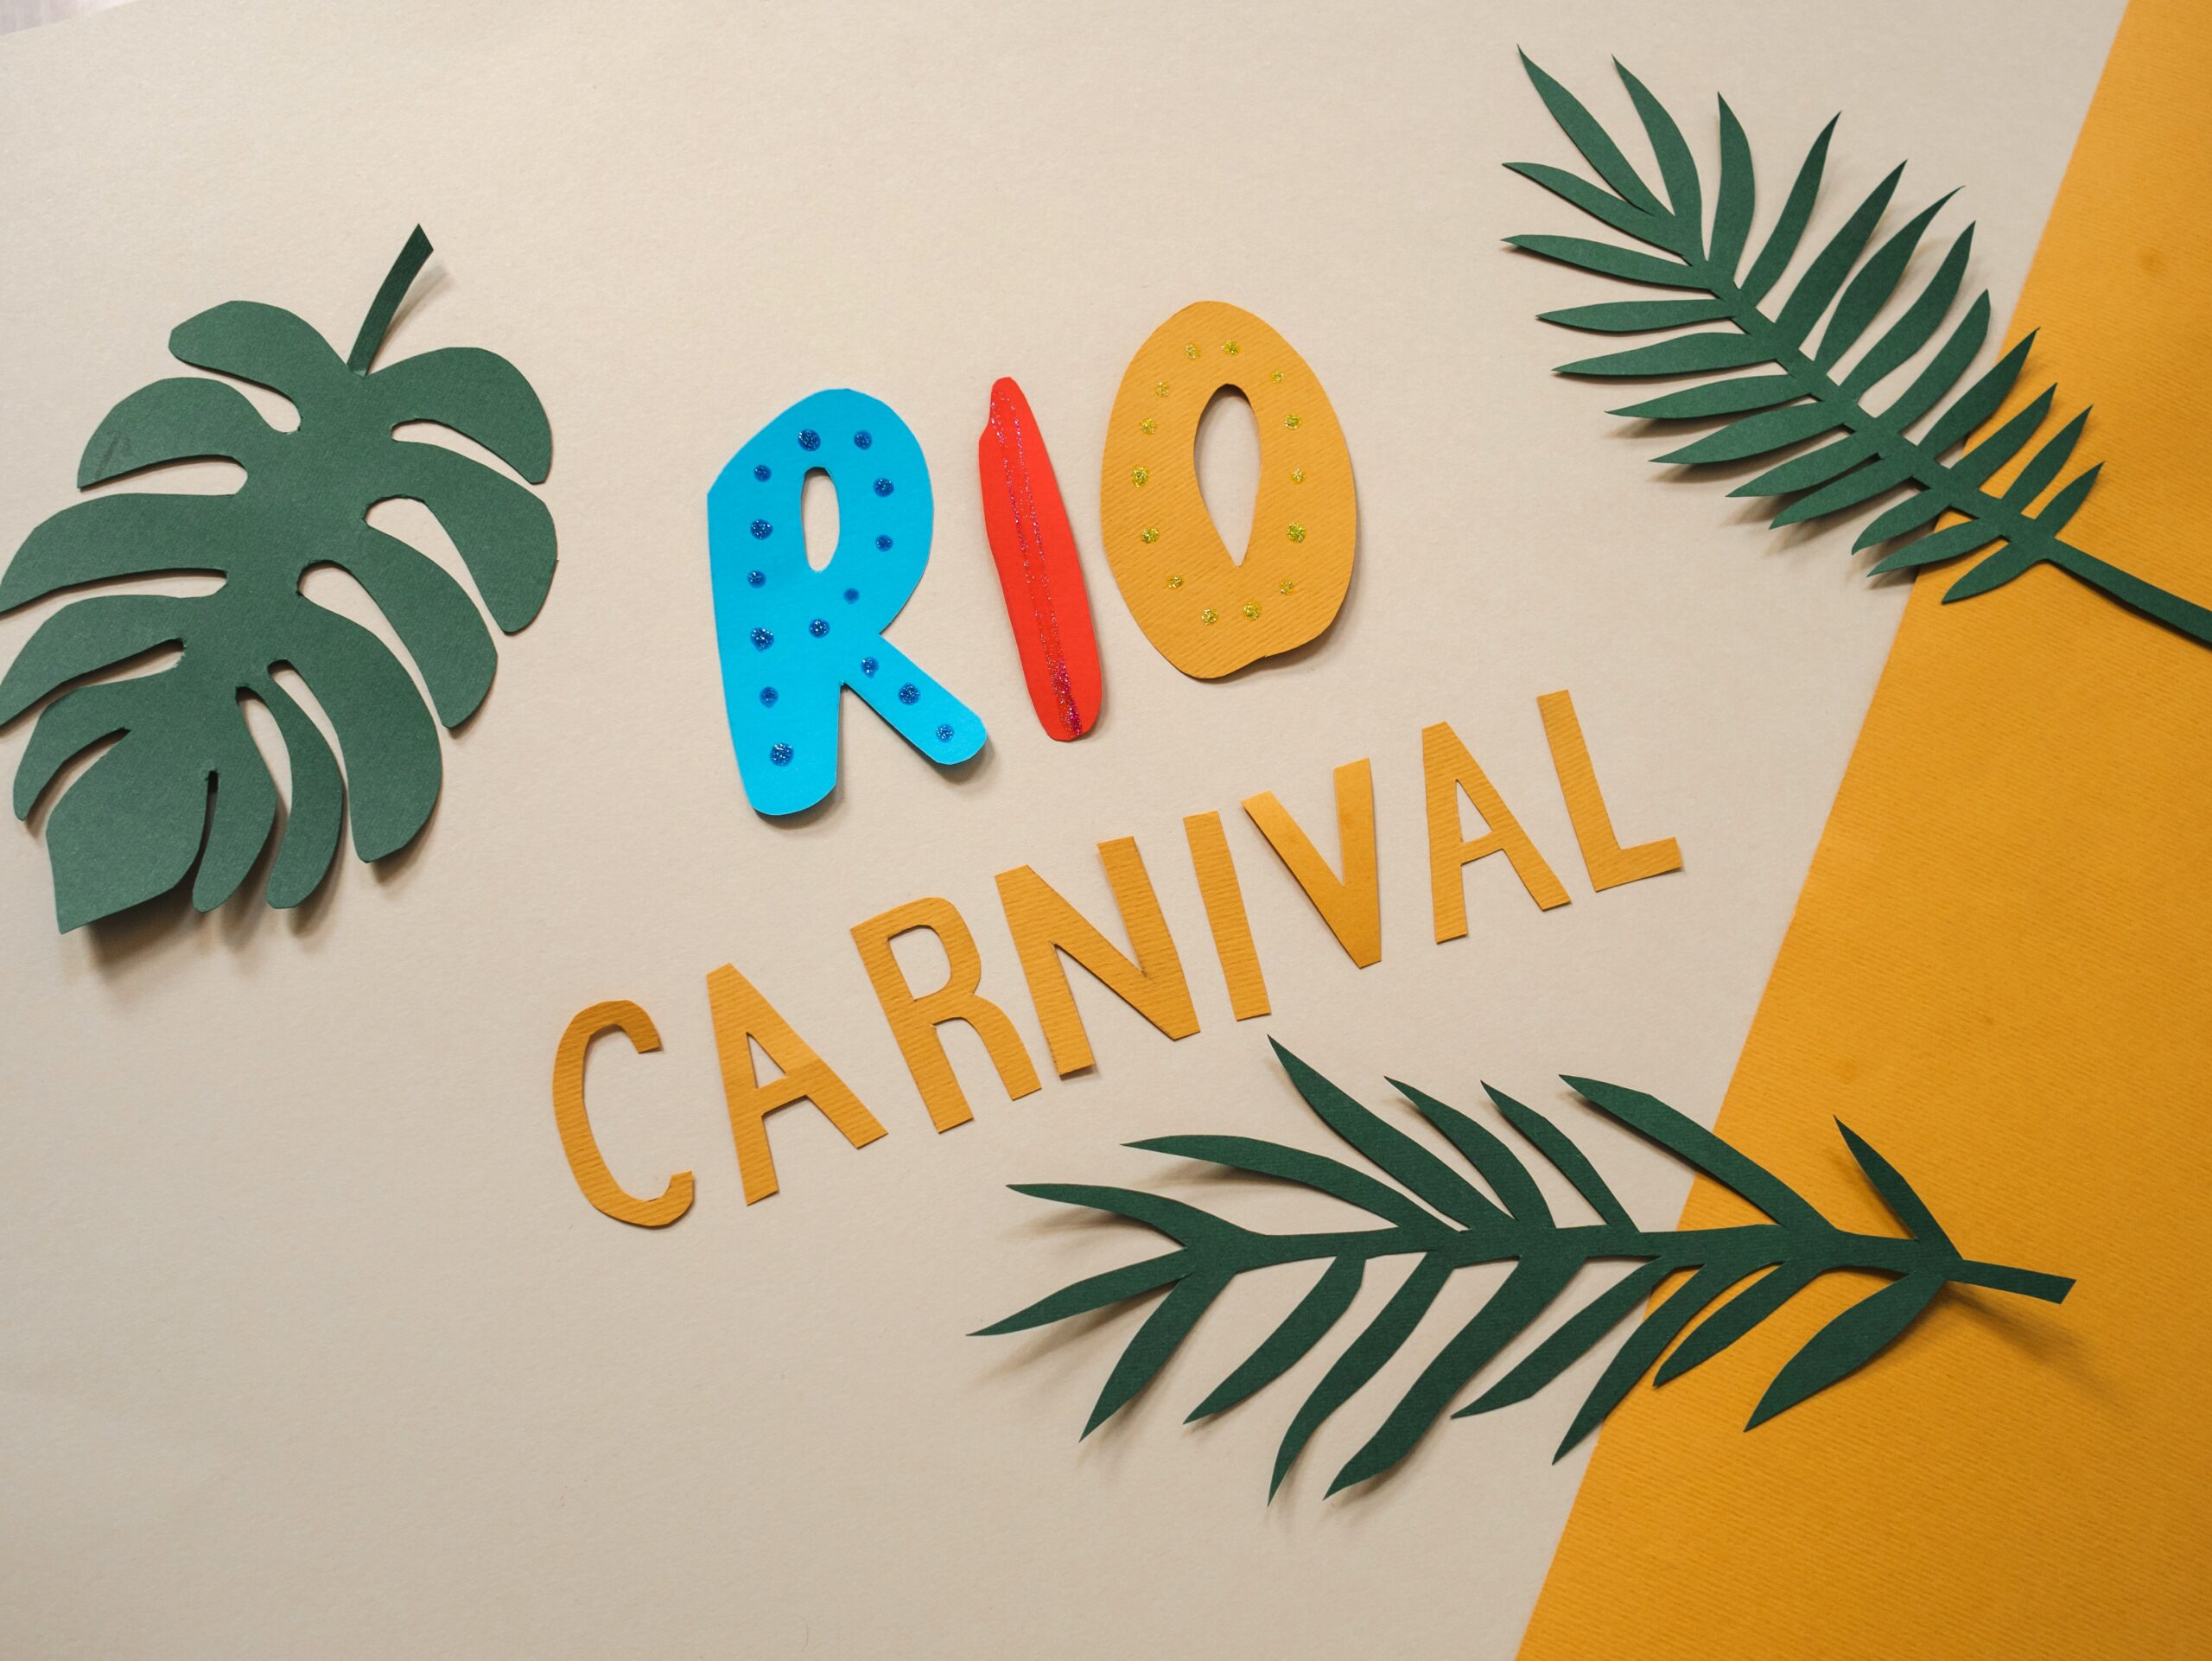 Les costumes du carnaval de Rio s'offrent une nouvelle vie de